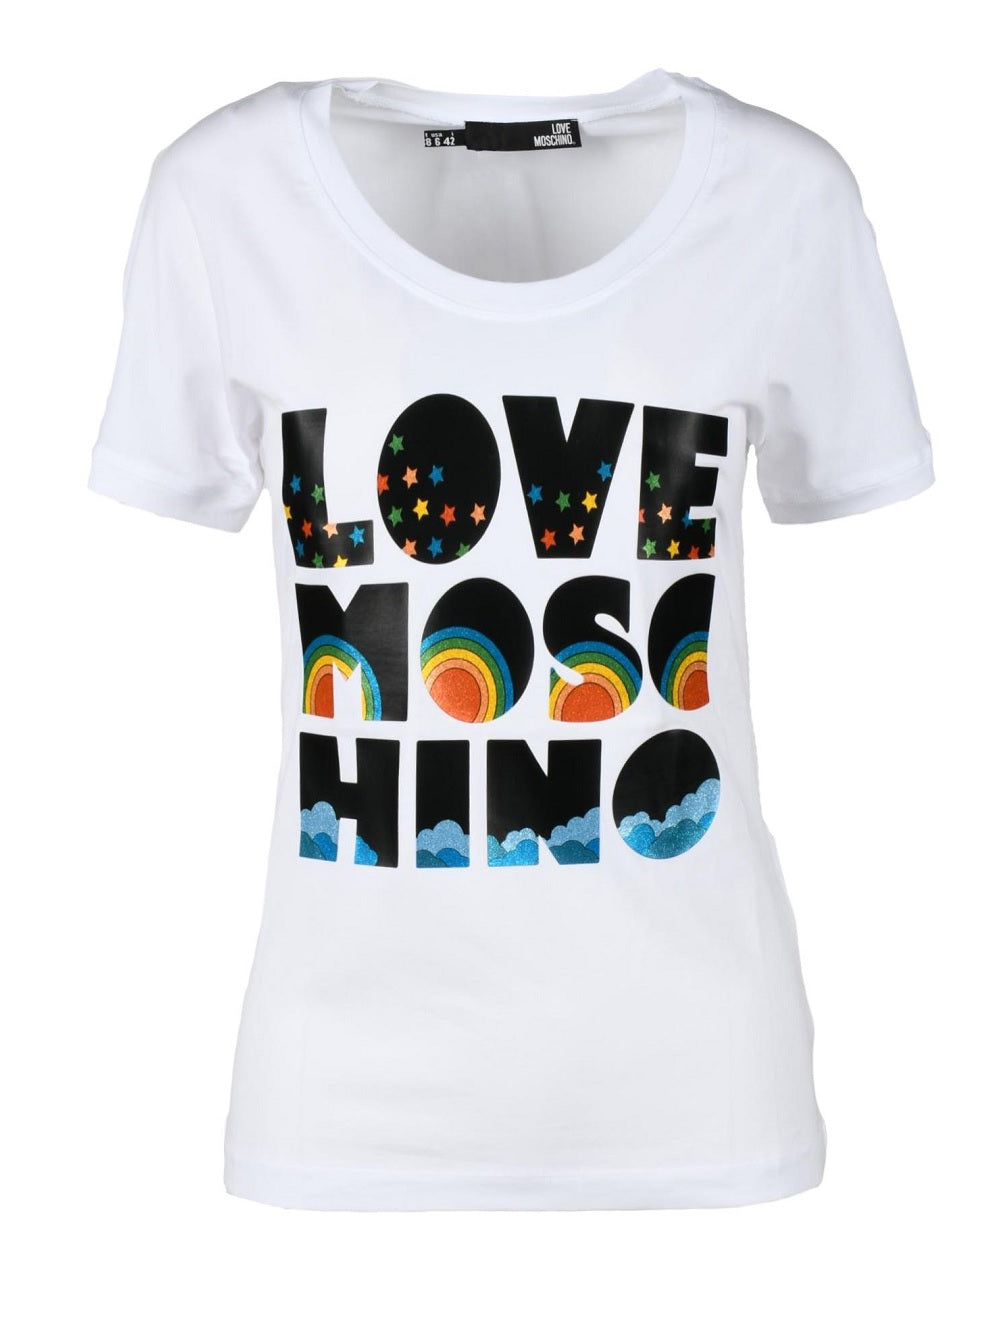 T-shirt Love Moschino modello W4H6802E1951 con stampa del logo pattern